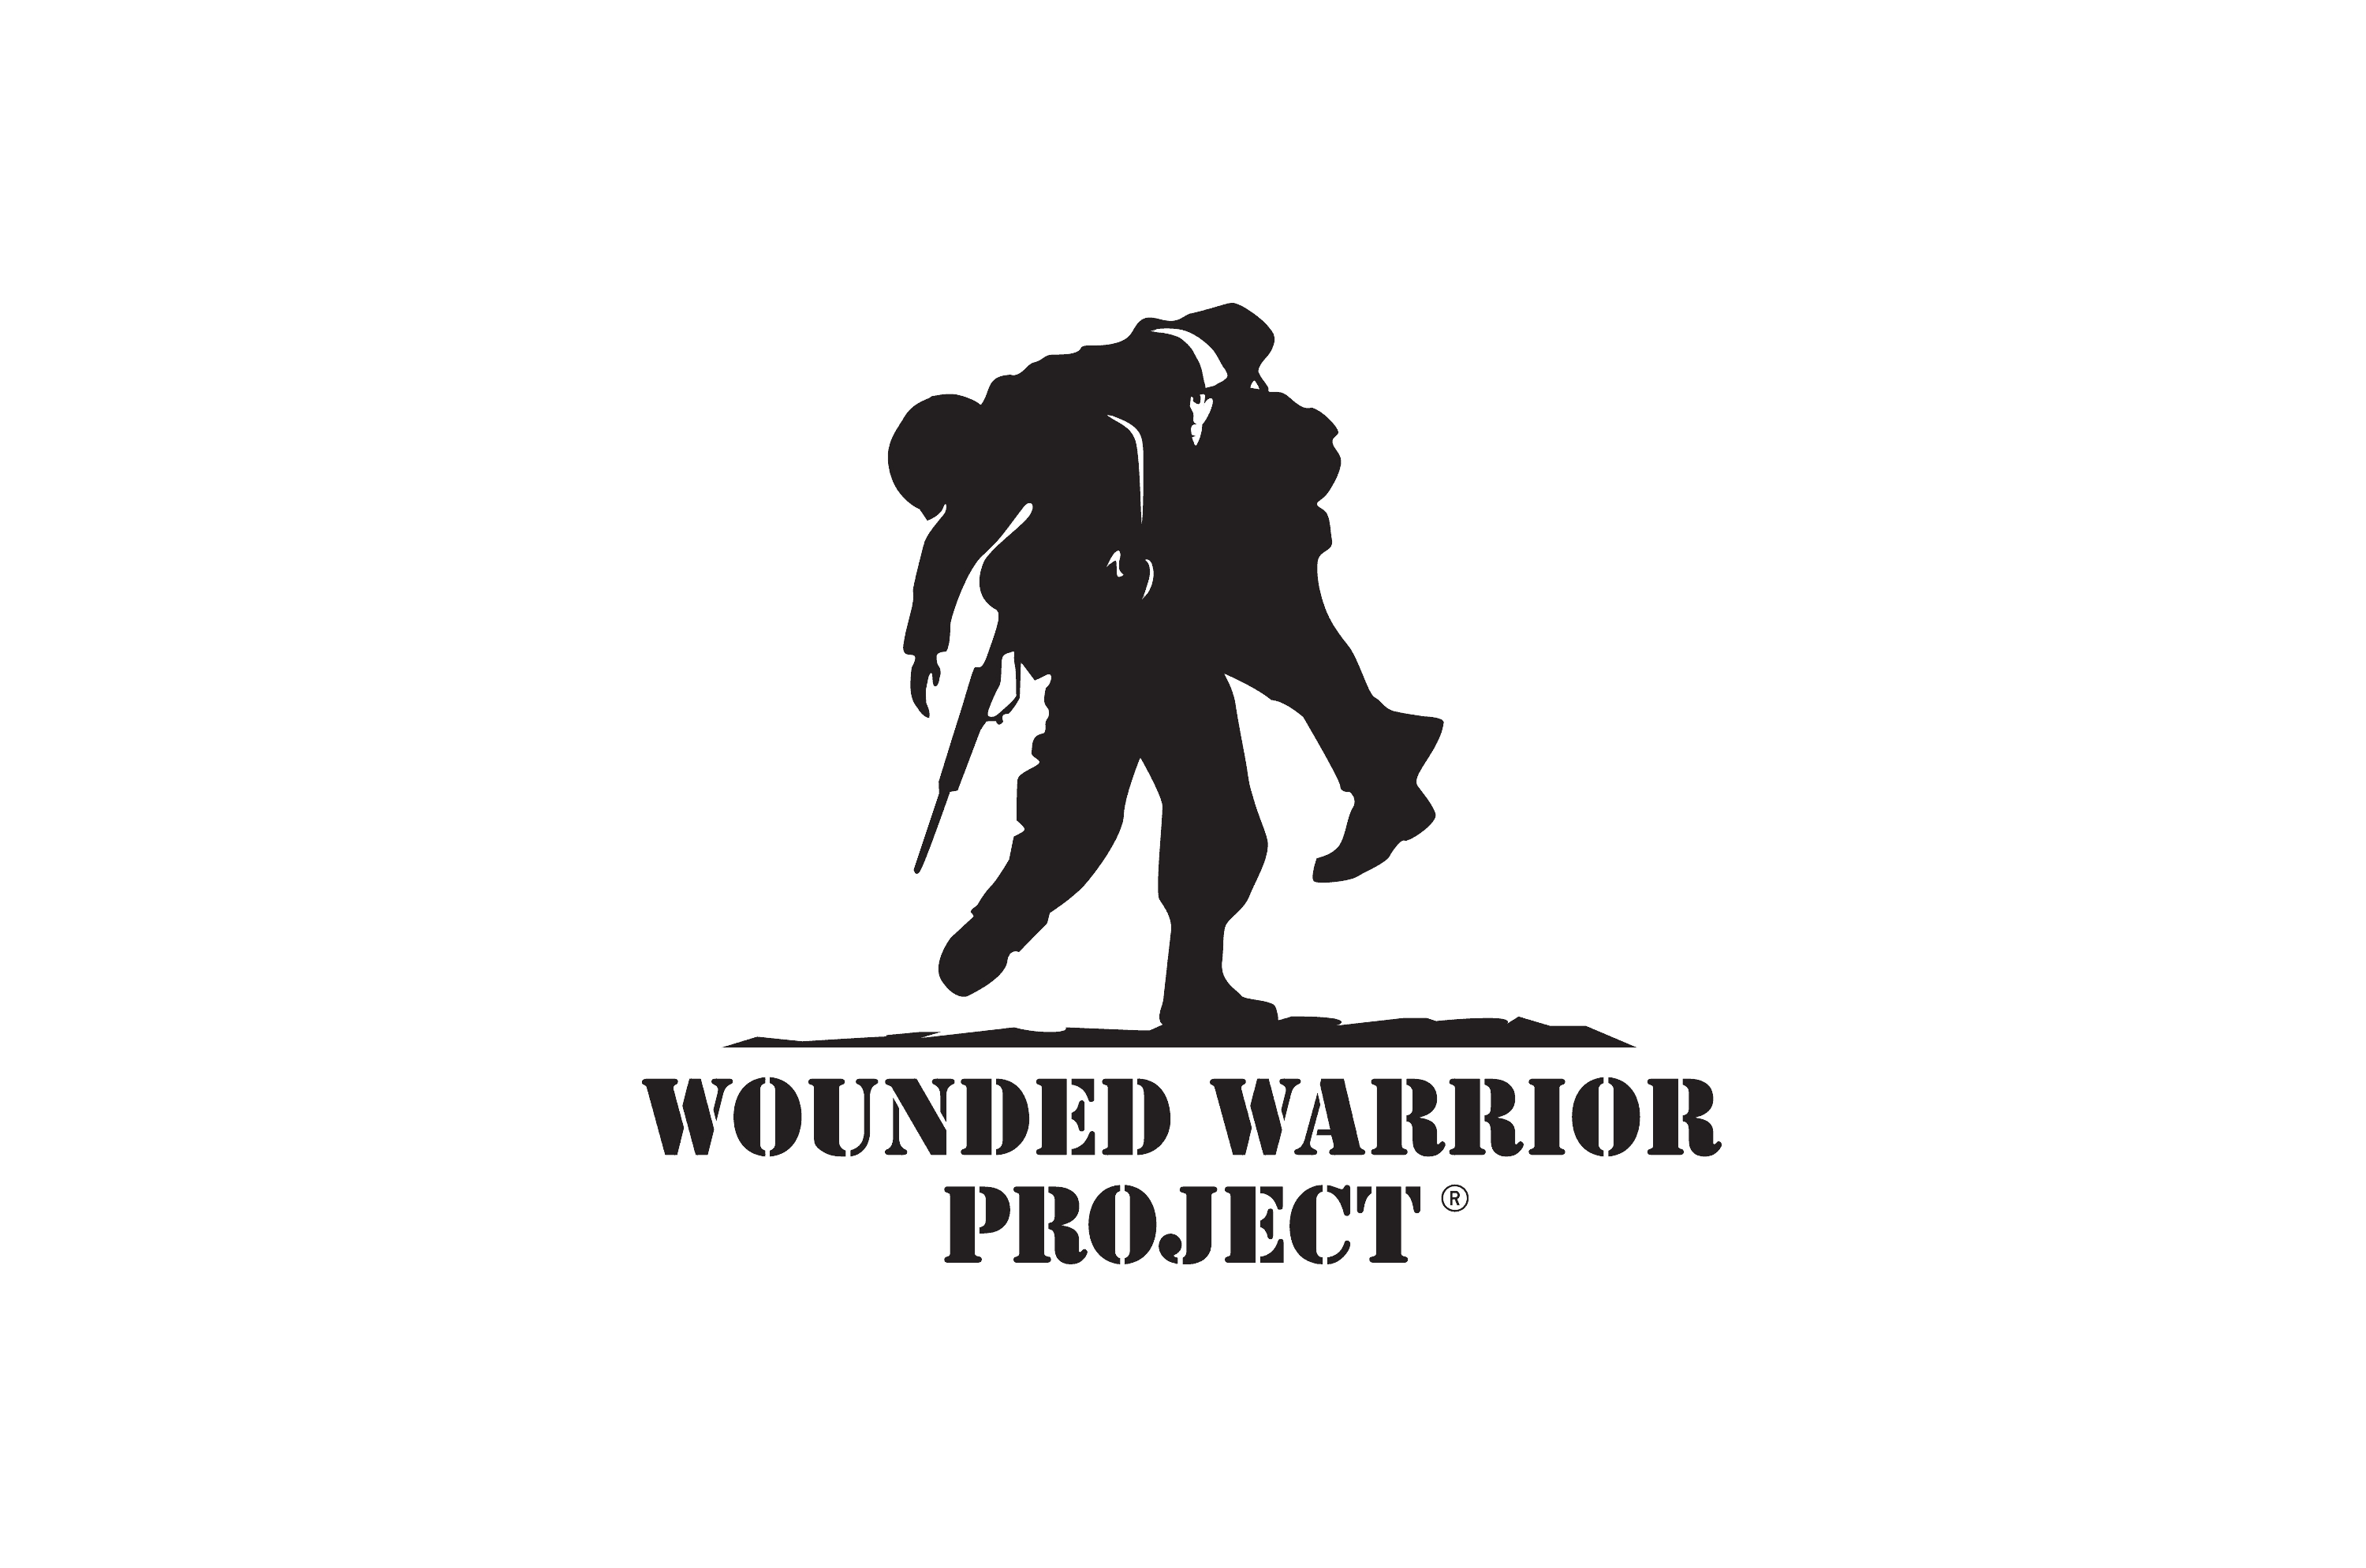 woundedwarriorproject.png?v=59.3.0